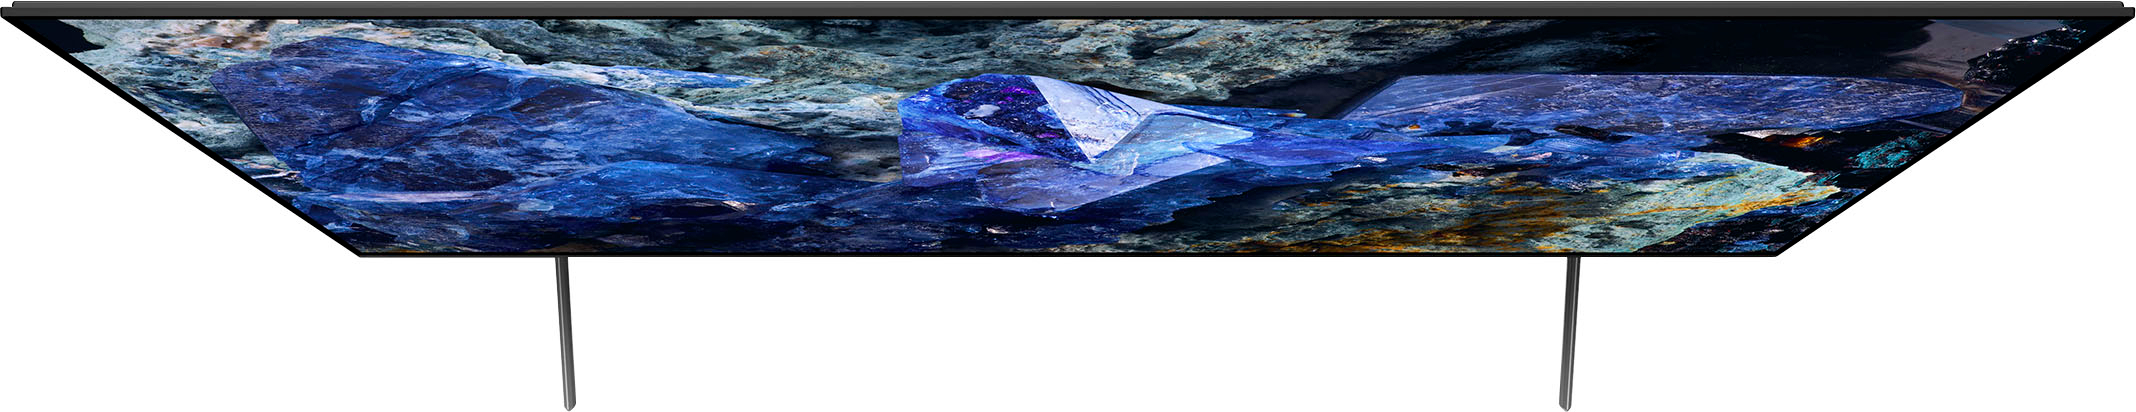 Sony - 55 Class Bravia XR A75L Series OLED 4K UHD Smart Google TV